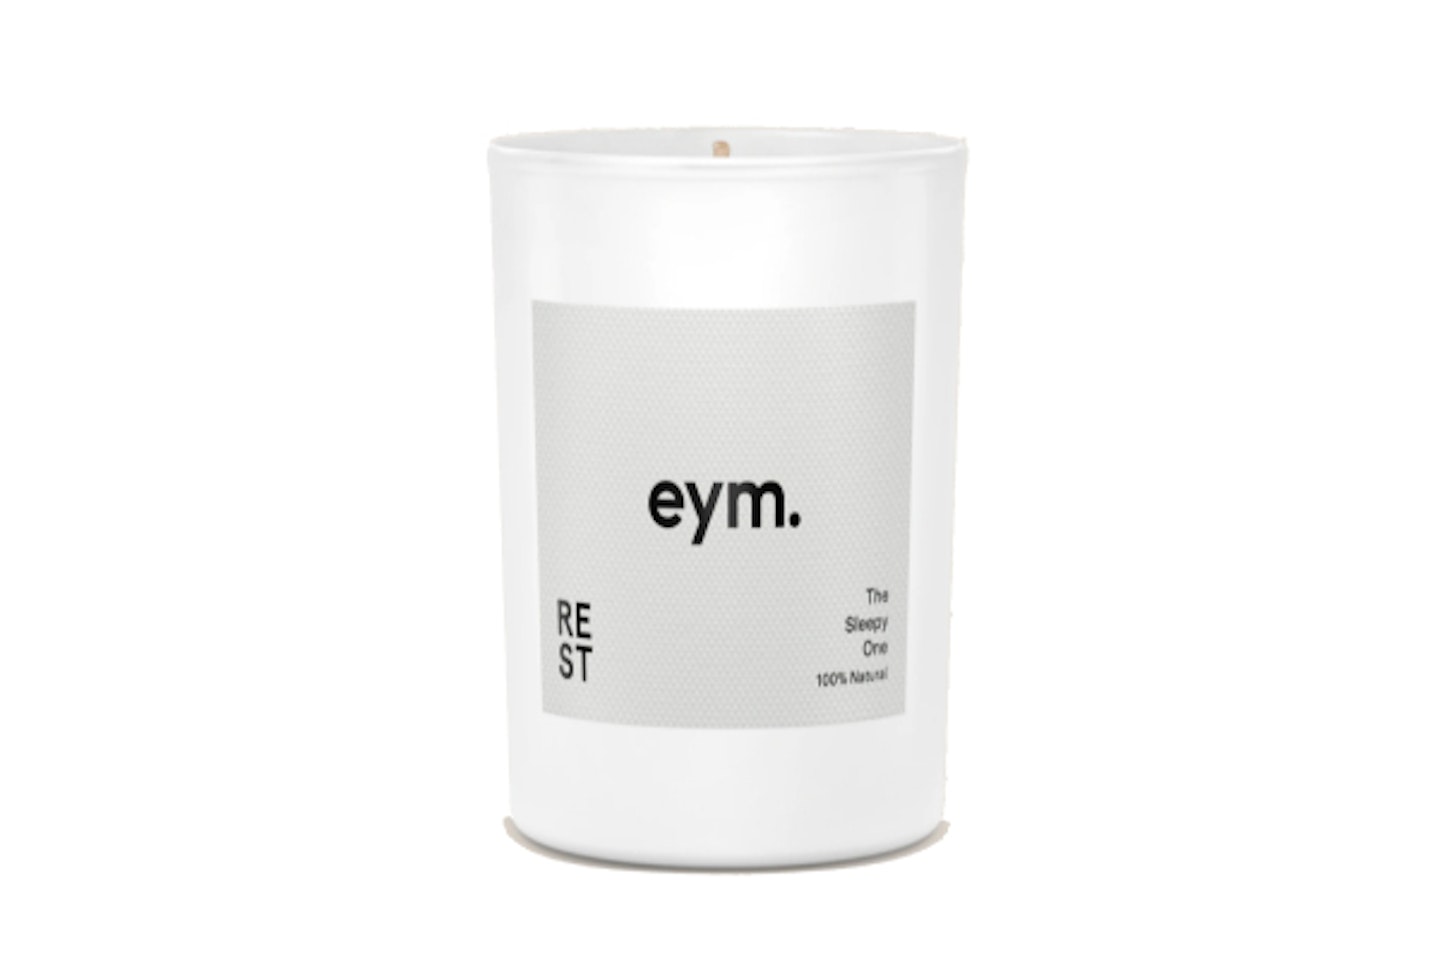 Eym candle